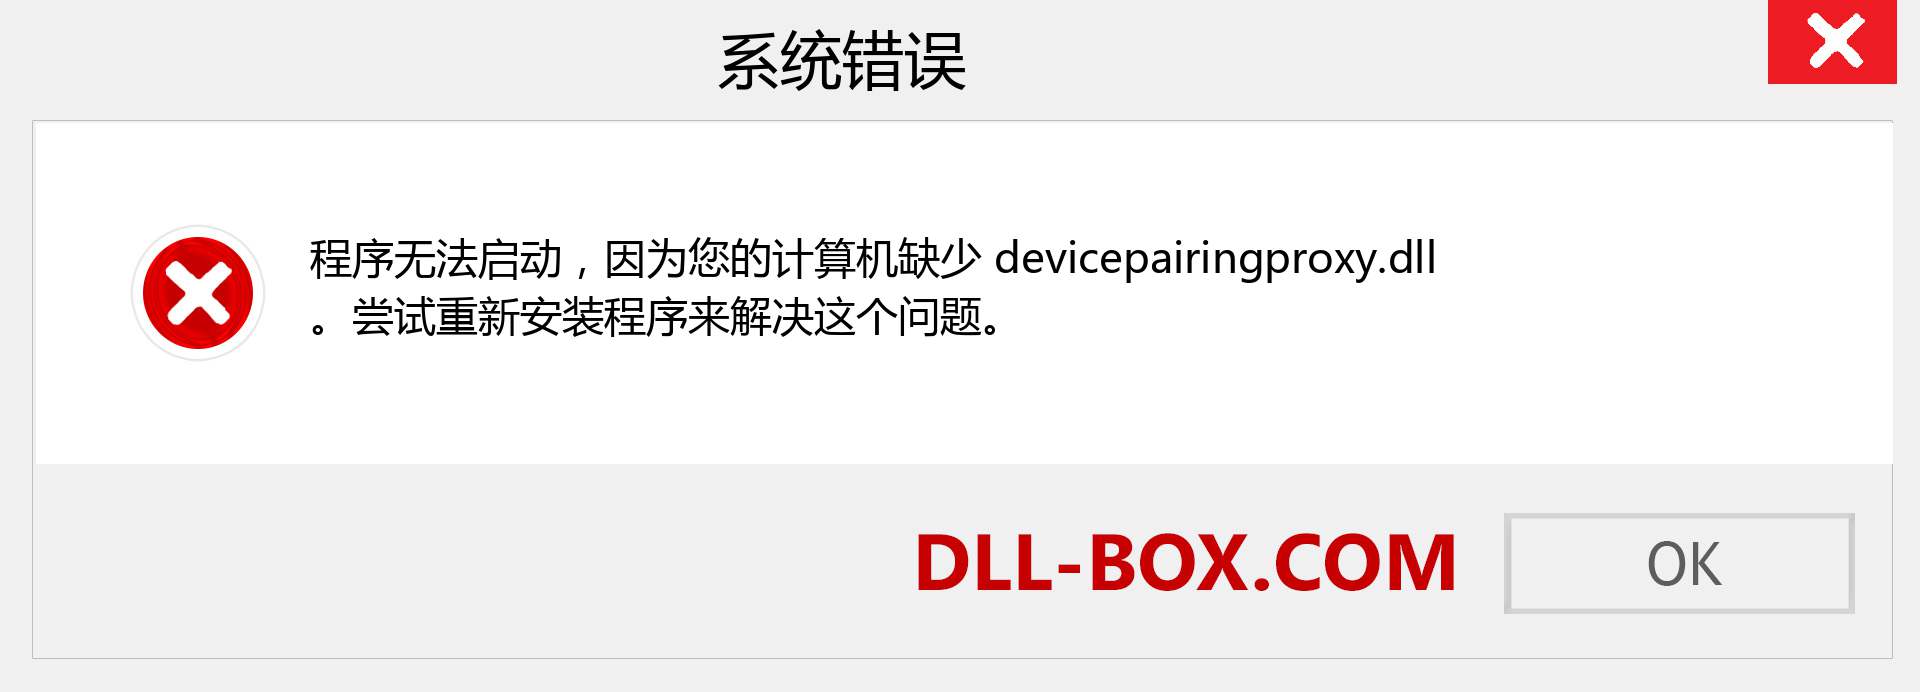 devicepairingproxy.dll 文件丢失？。 适用于 Windows 7、8、10 的下载 - 修复 Windows、照片、图像上的 devicepairingproxy dll 丢失错误